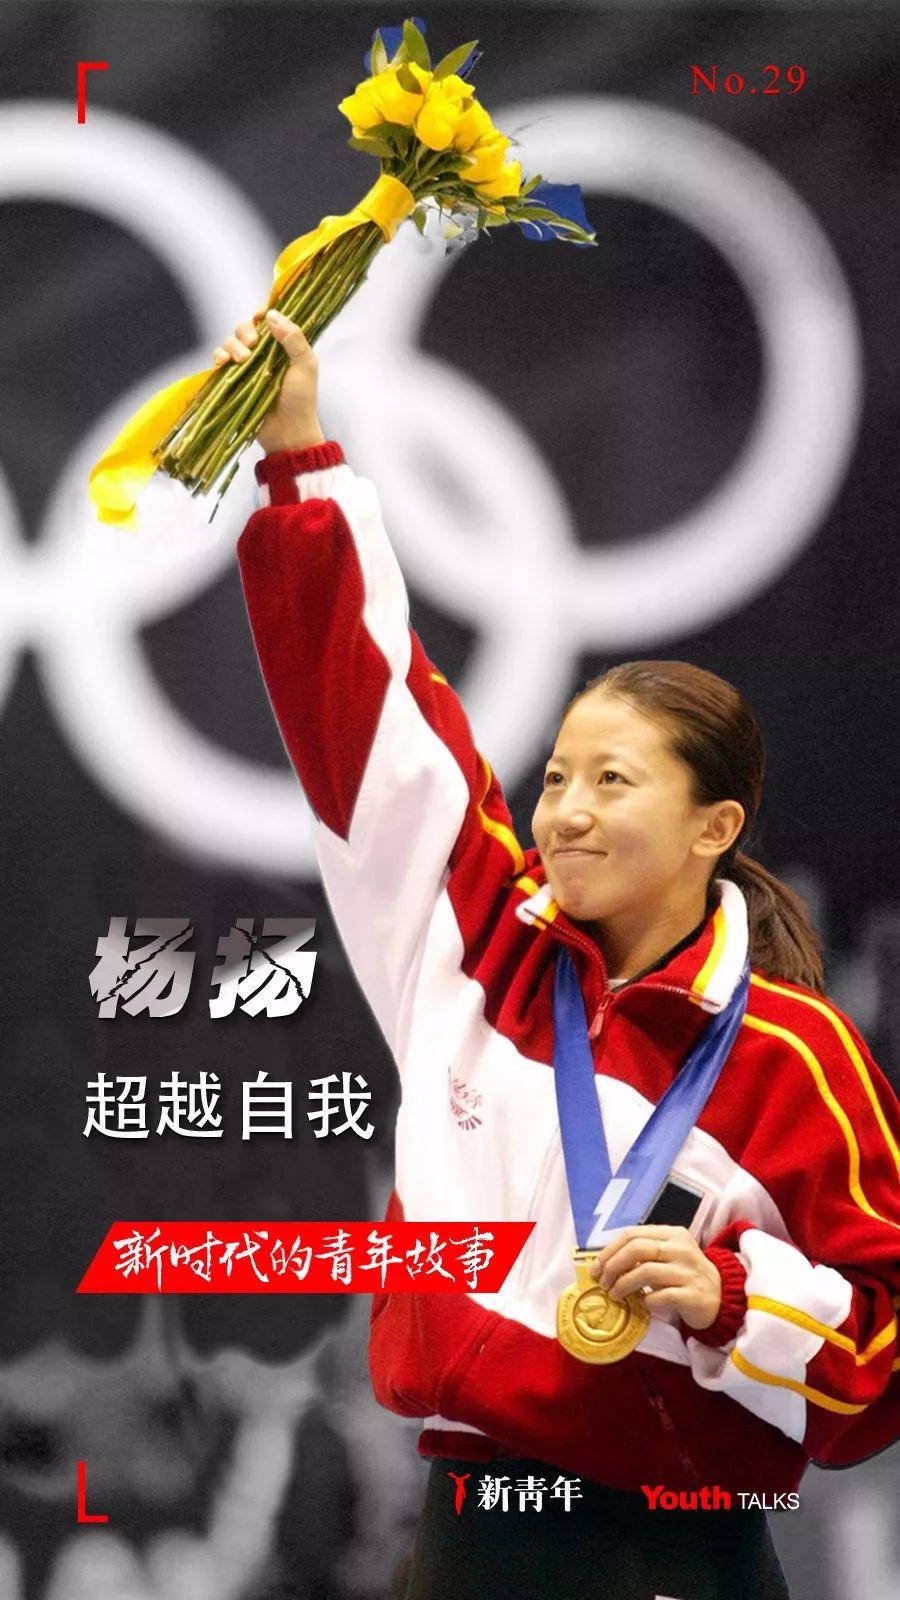 杨扬,前中国短道速滑名将,中国首枚冬奥会金牌得主,北京2022年冬奥会